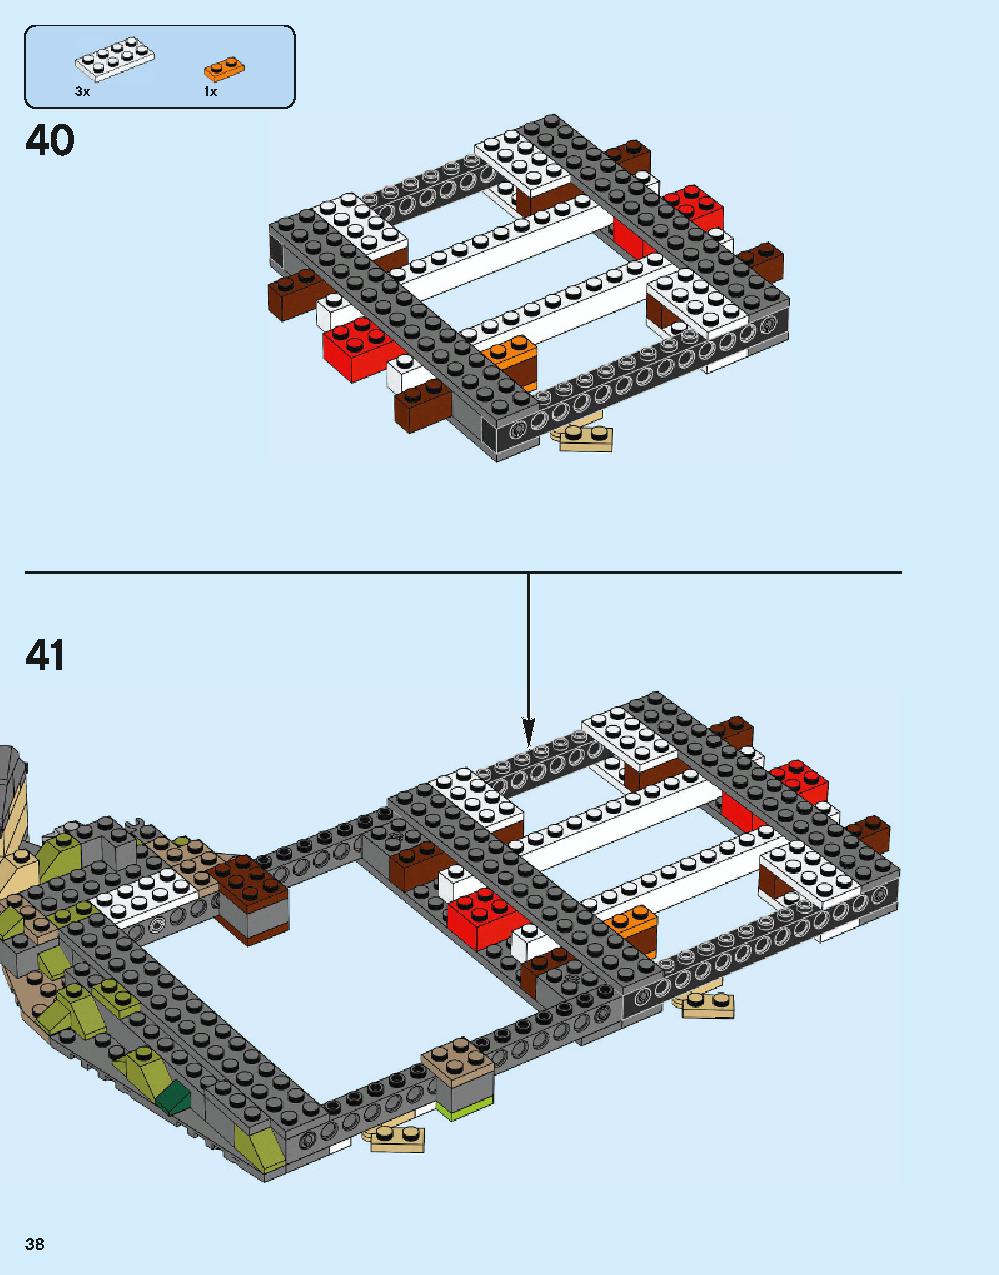 ホグワーツ城 71043 レゴの商品情報 レゴの説明書・組立方法 38 page